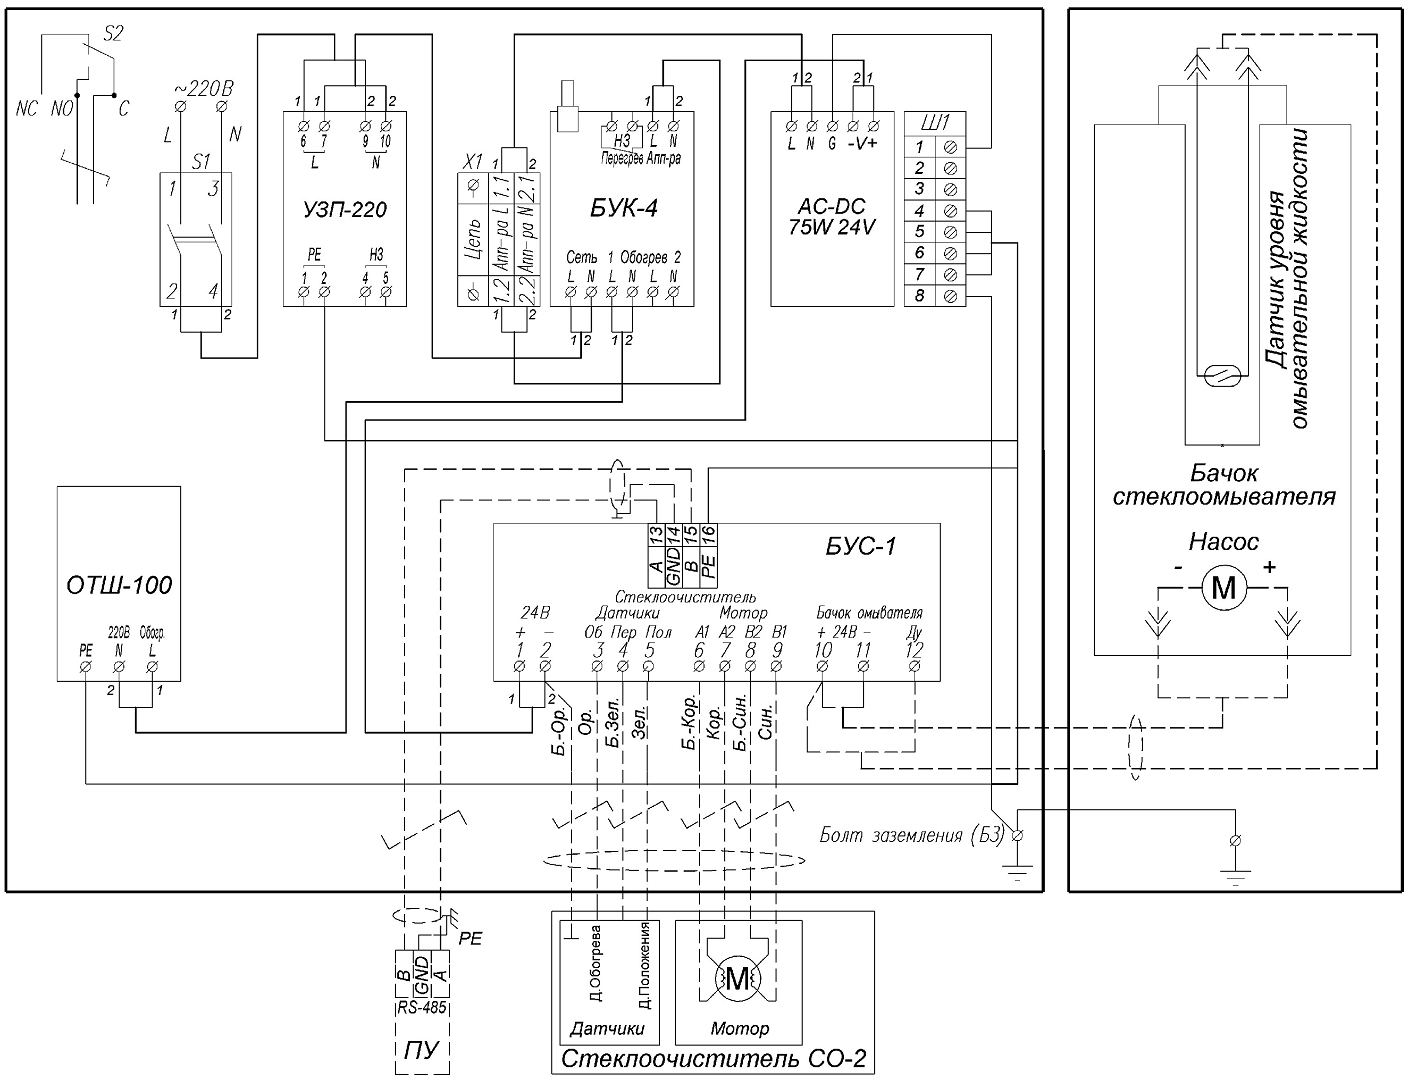 Схема подключения стеклоочистителя, омывателя, бачка омывателя и пульта управления оператора (в комплект поставки не входит) к БУС-1